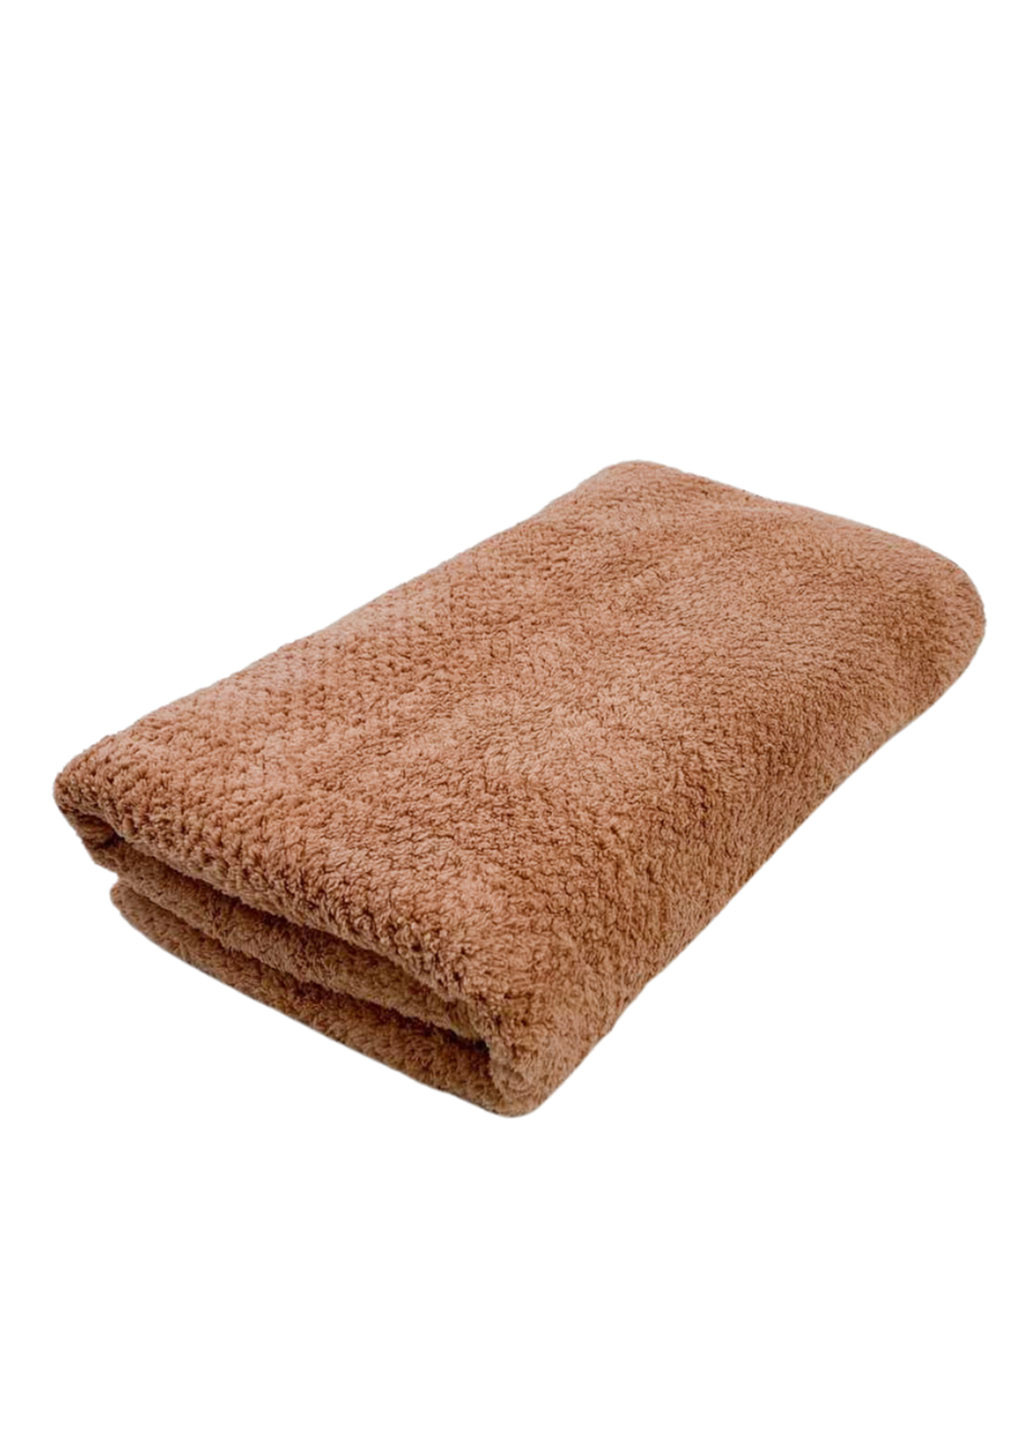 Homedec полотенце лицевое микрофибра 100х50 см однотонный коричневый производство - Турция